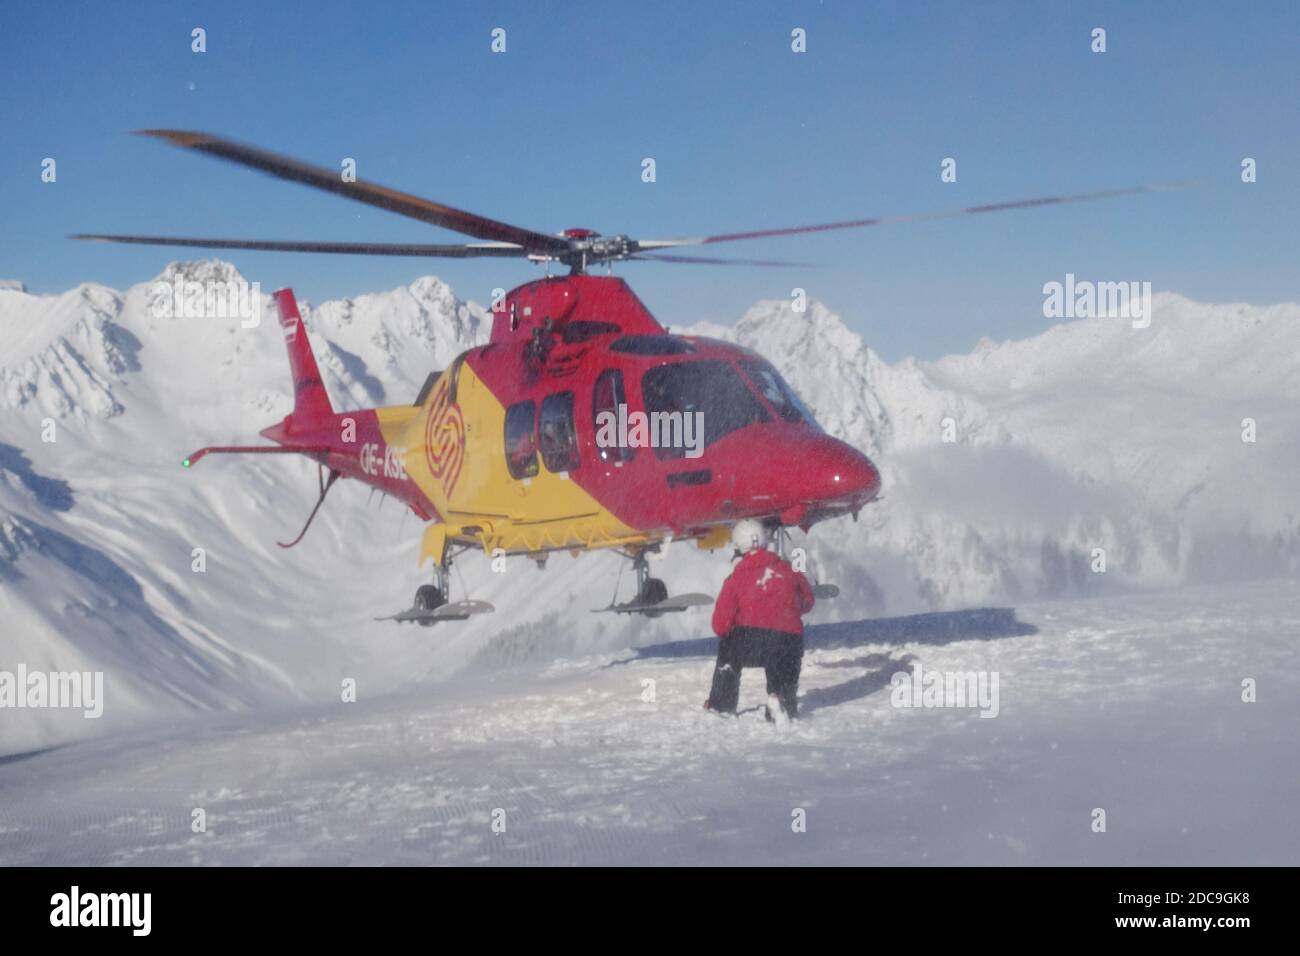 04.02.2019, Schruns, Vorarlberg, Autriche - hélicoptère de secours au-dessus de la pente. 00S190204D819CAROEX.JPG [AUTORISATION DU MODÈLE : NON, AUTORISATION DU PROPRIÉTAIRE : Banque D'Images